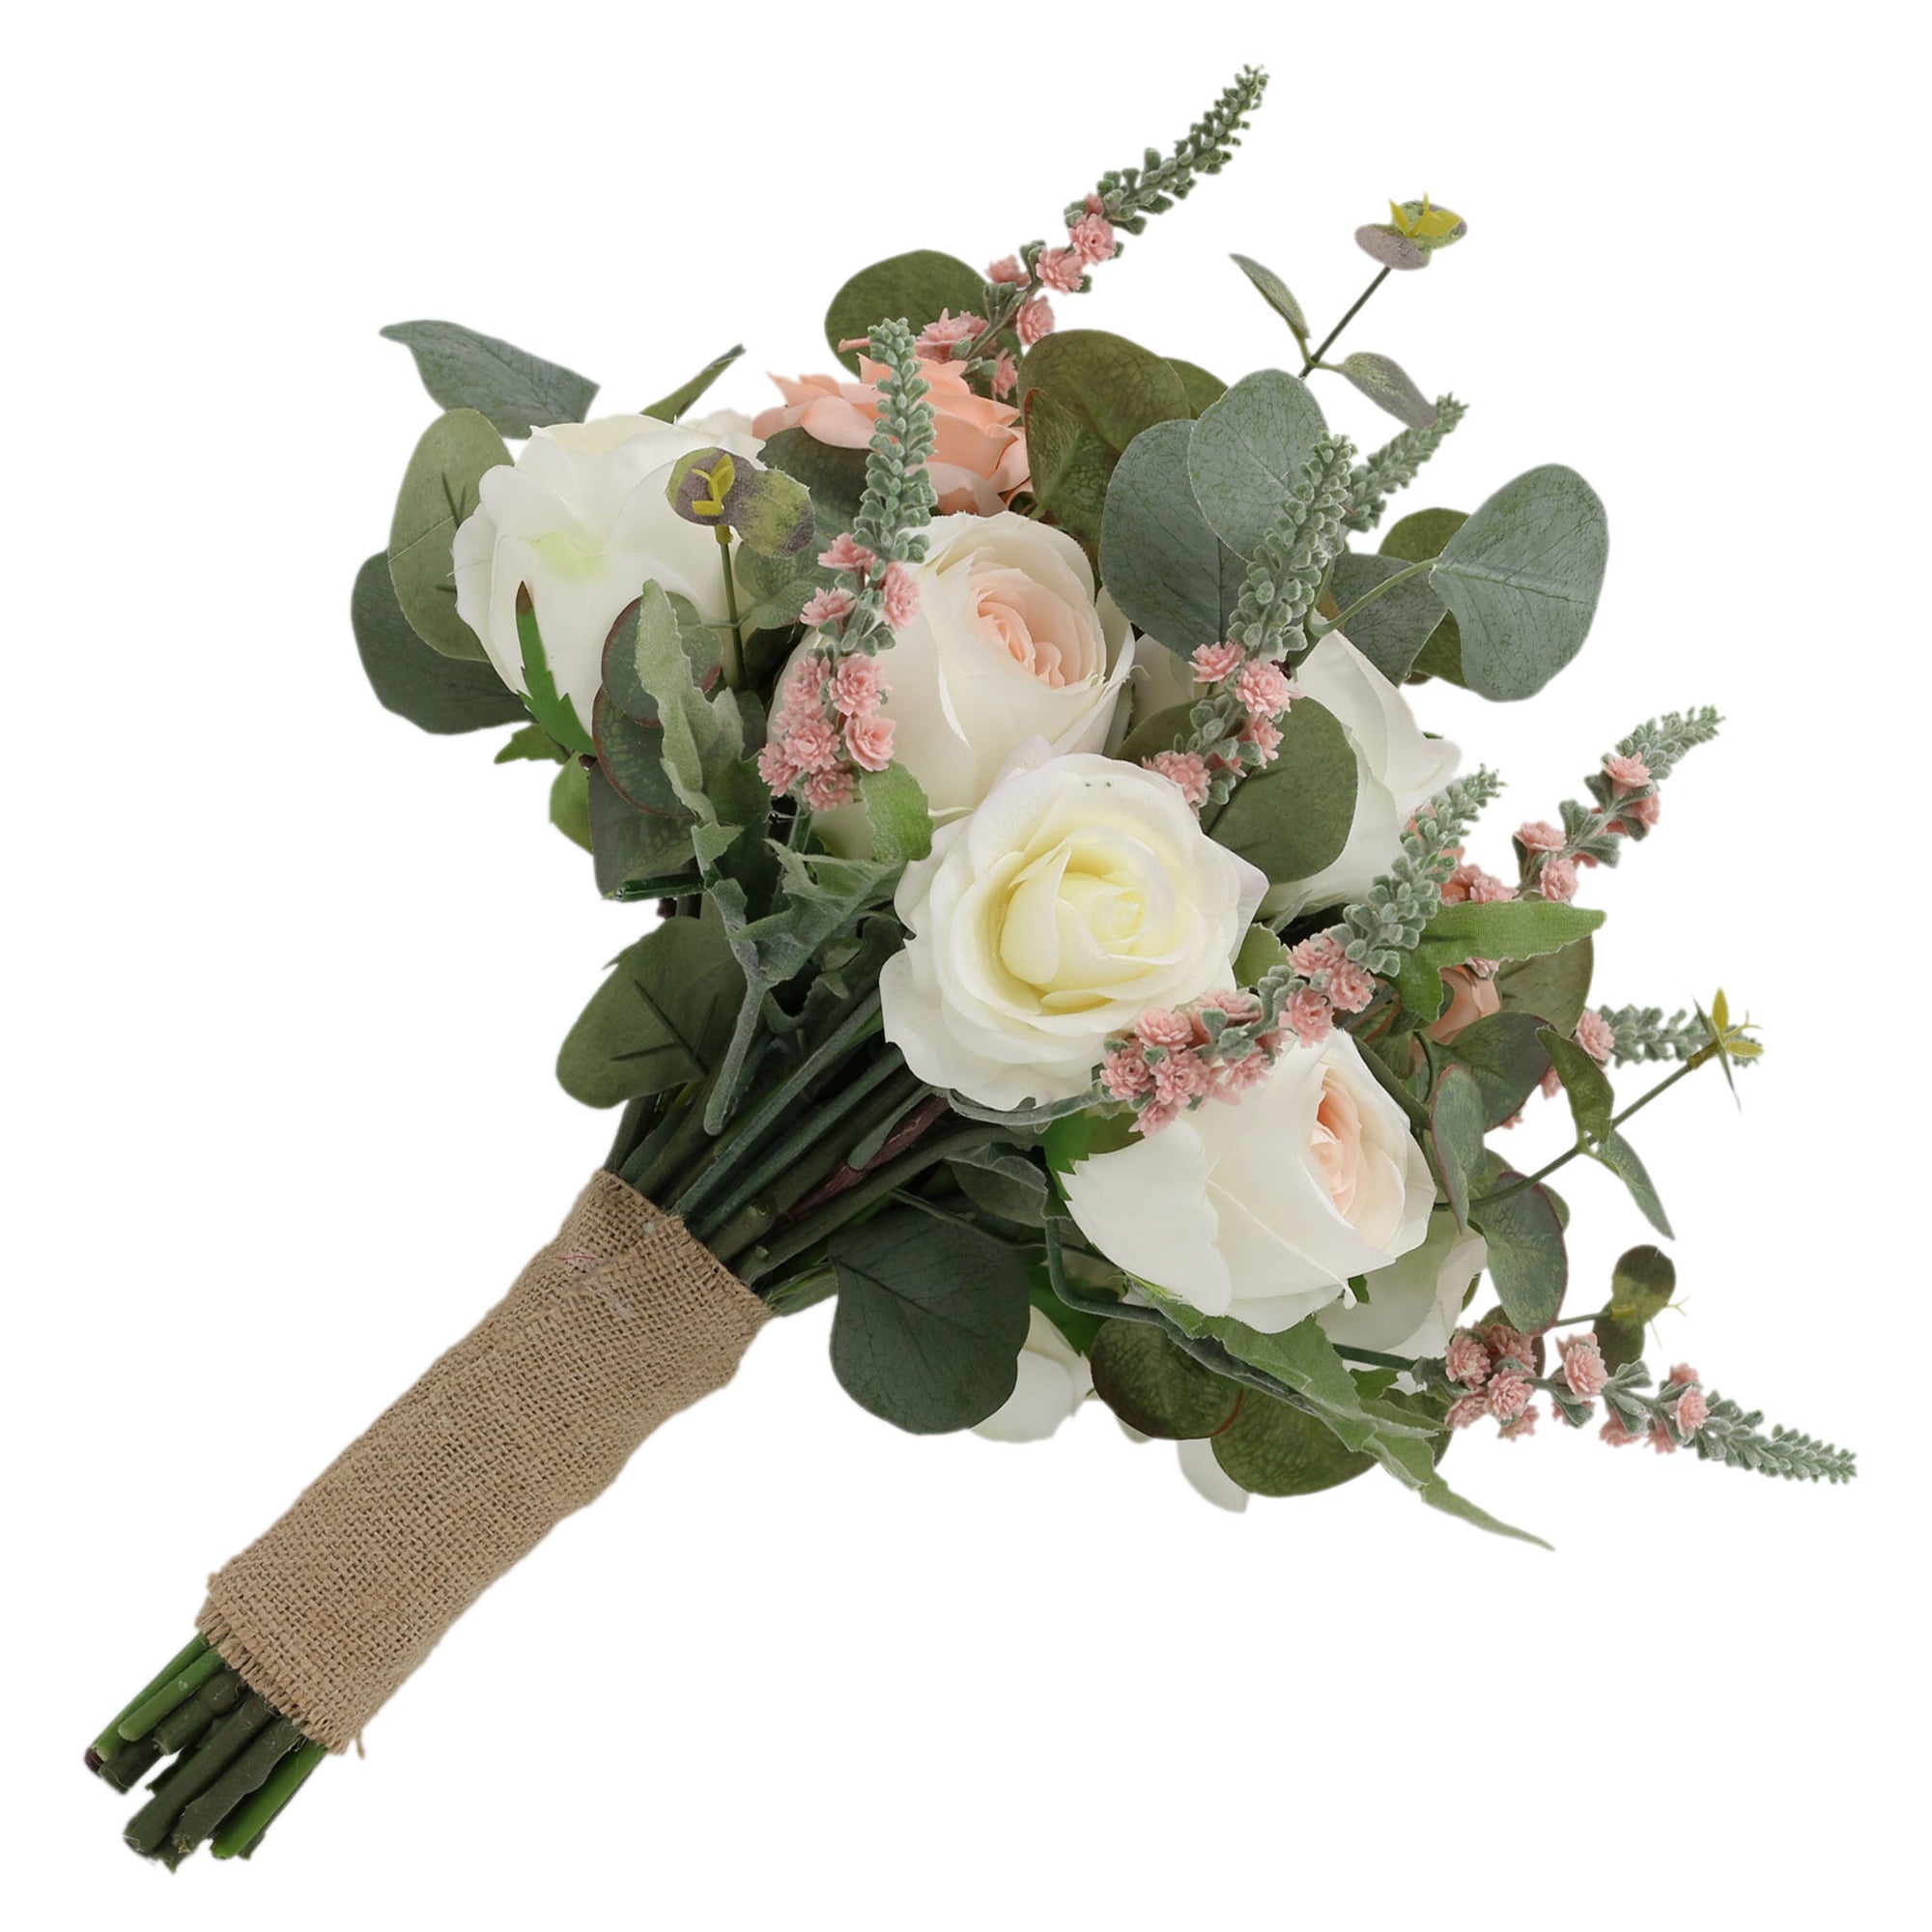 Spring Wedding Rustic Bridal Bouquet Blush Ivory Wedding Flowers